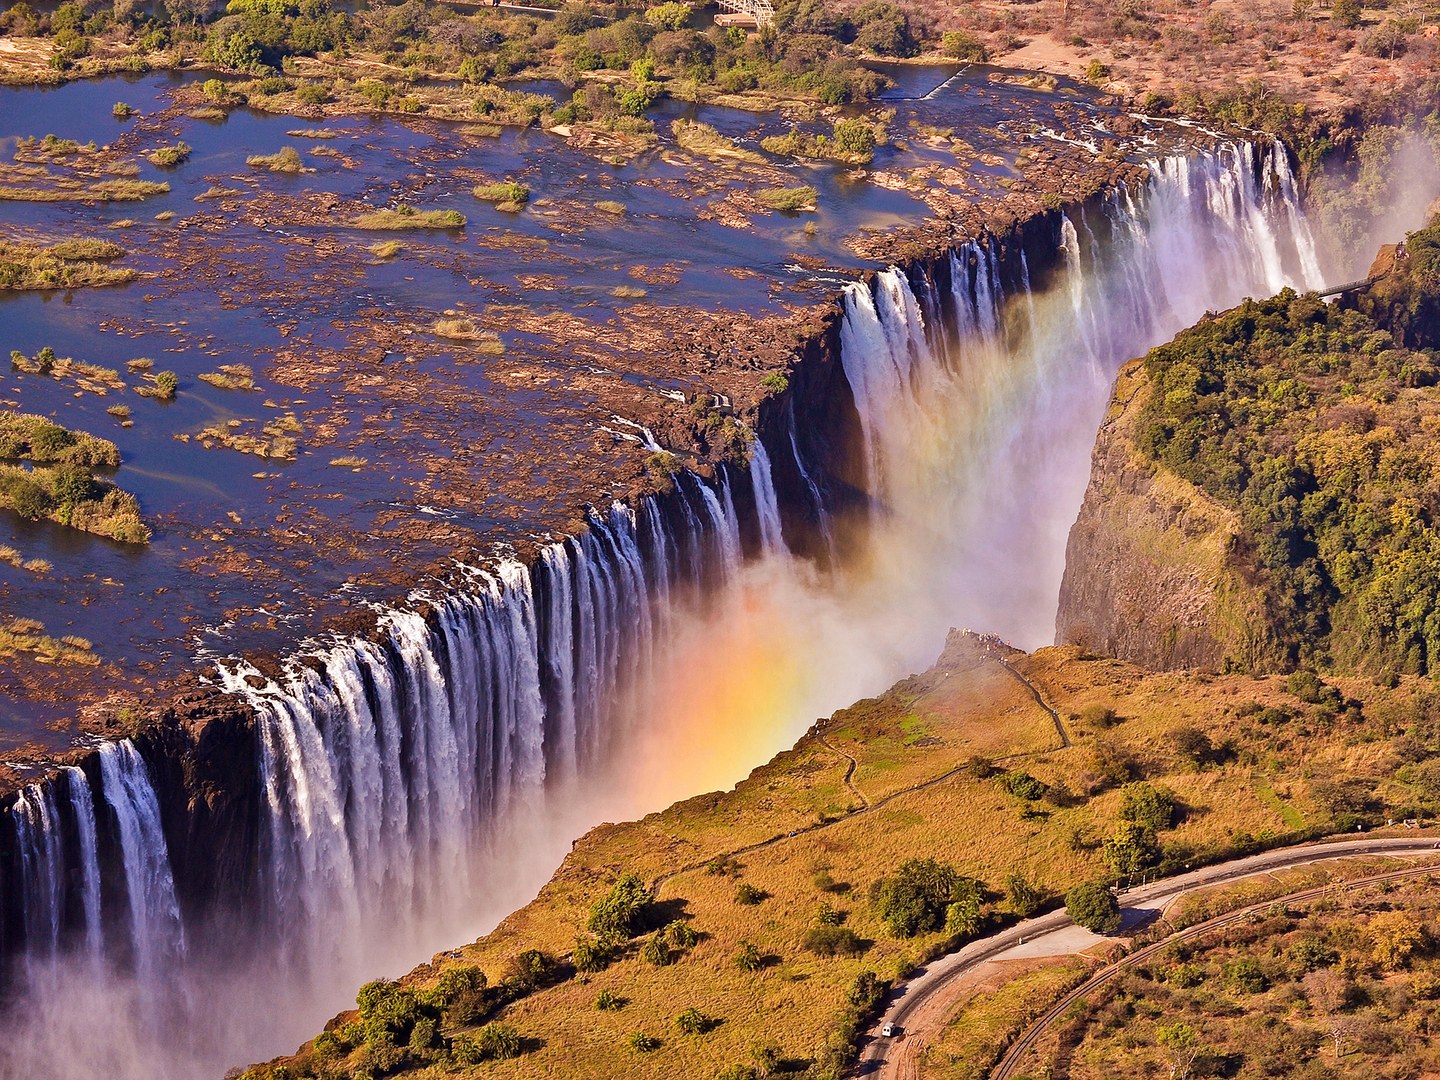 Thác Victoria nằm giữa biên giới Zambia và Zimbabwe với chiều cao 108m, rộng 1708m. Victoria bao gồm 4 thác nước, phân cách bởi các hòn đảo nhỏ và rạn san hô. Thác cuồn cuộn đổ như mưa như bão xuống hàng trăm m3 nước mỗi giây, nước xuộn trắng xóa giữa núi ngàn và rền vang hàng km.